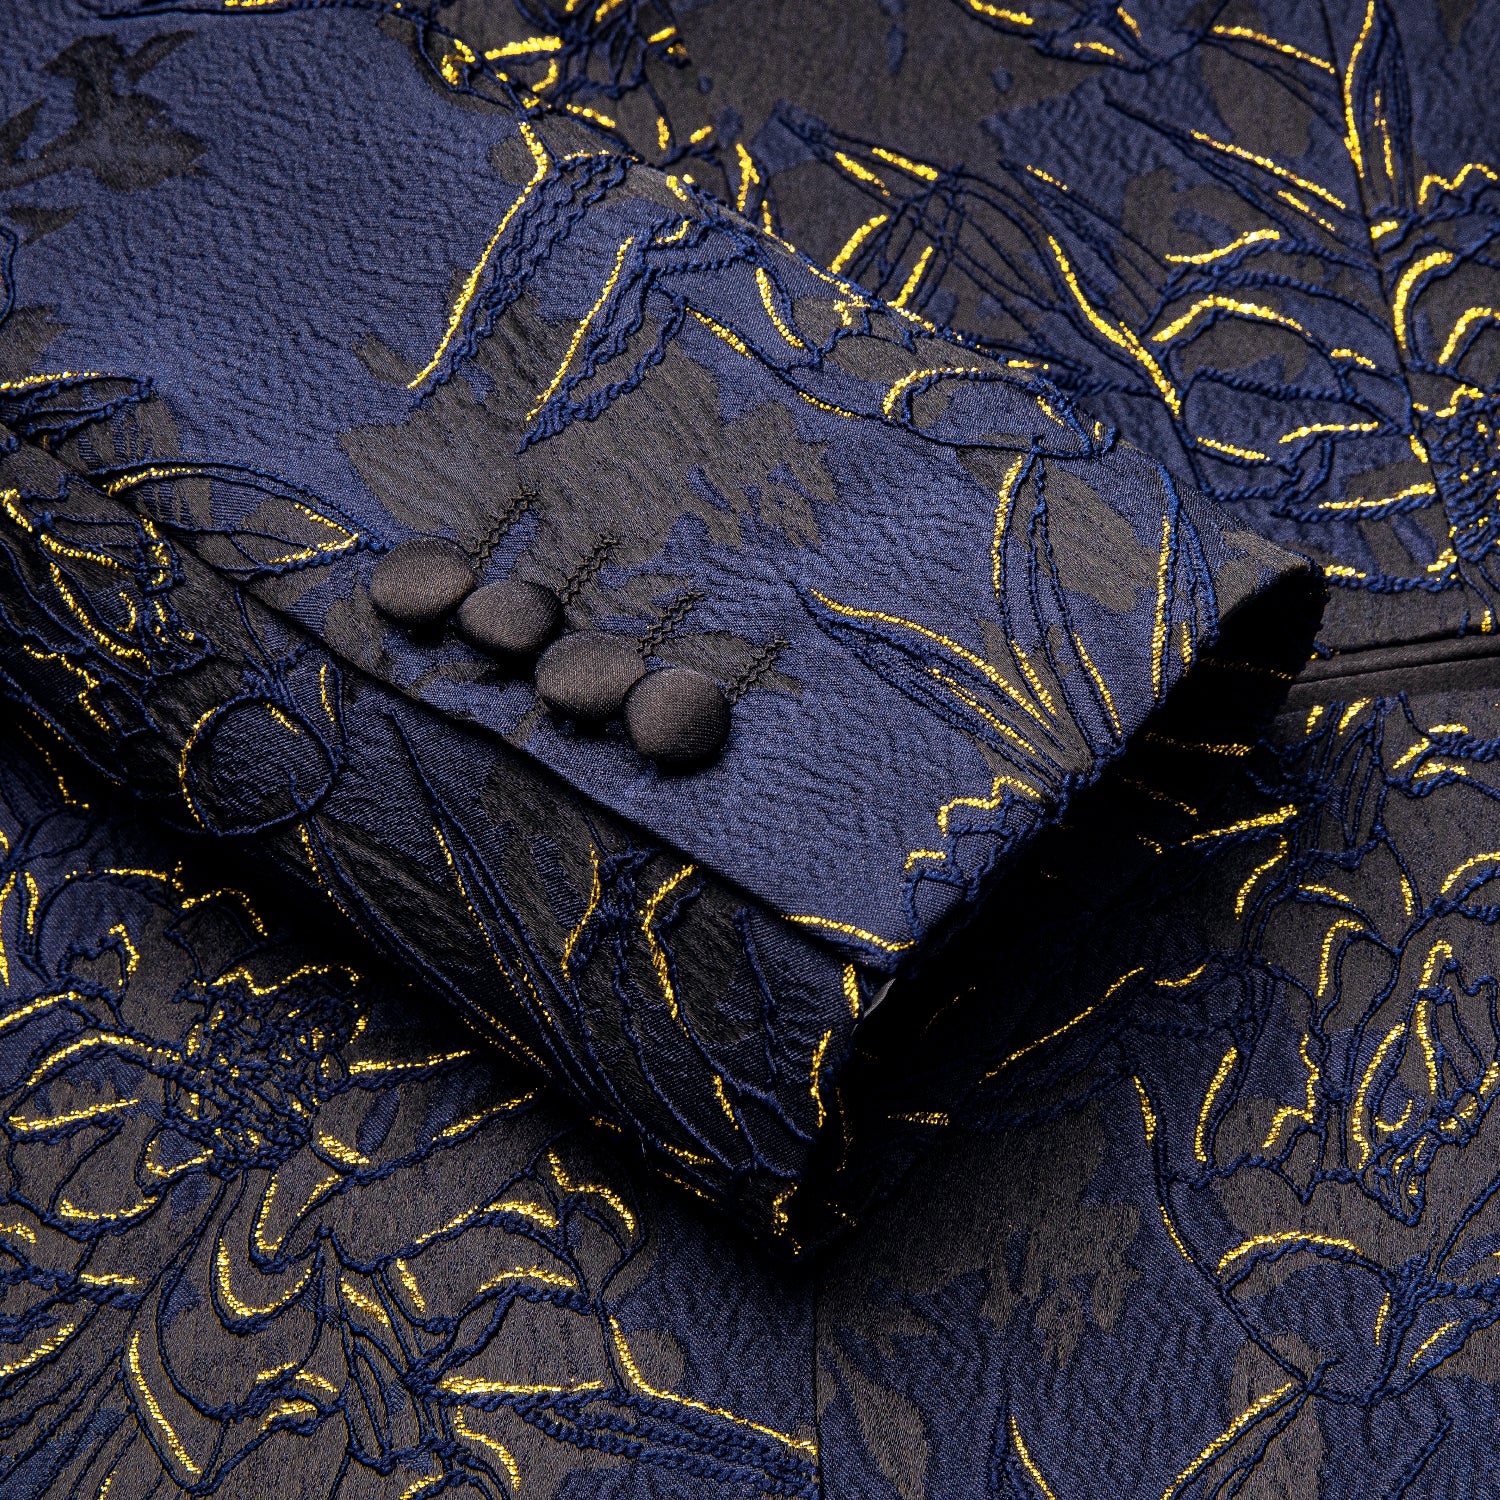 New Luxury Blue Gold Engraved Men's Suit Set